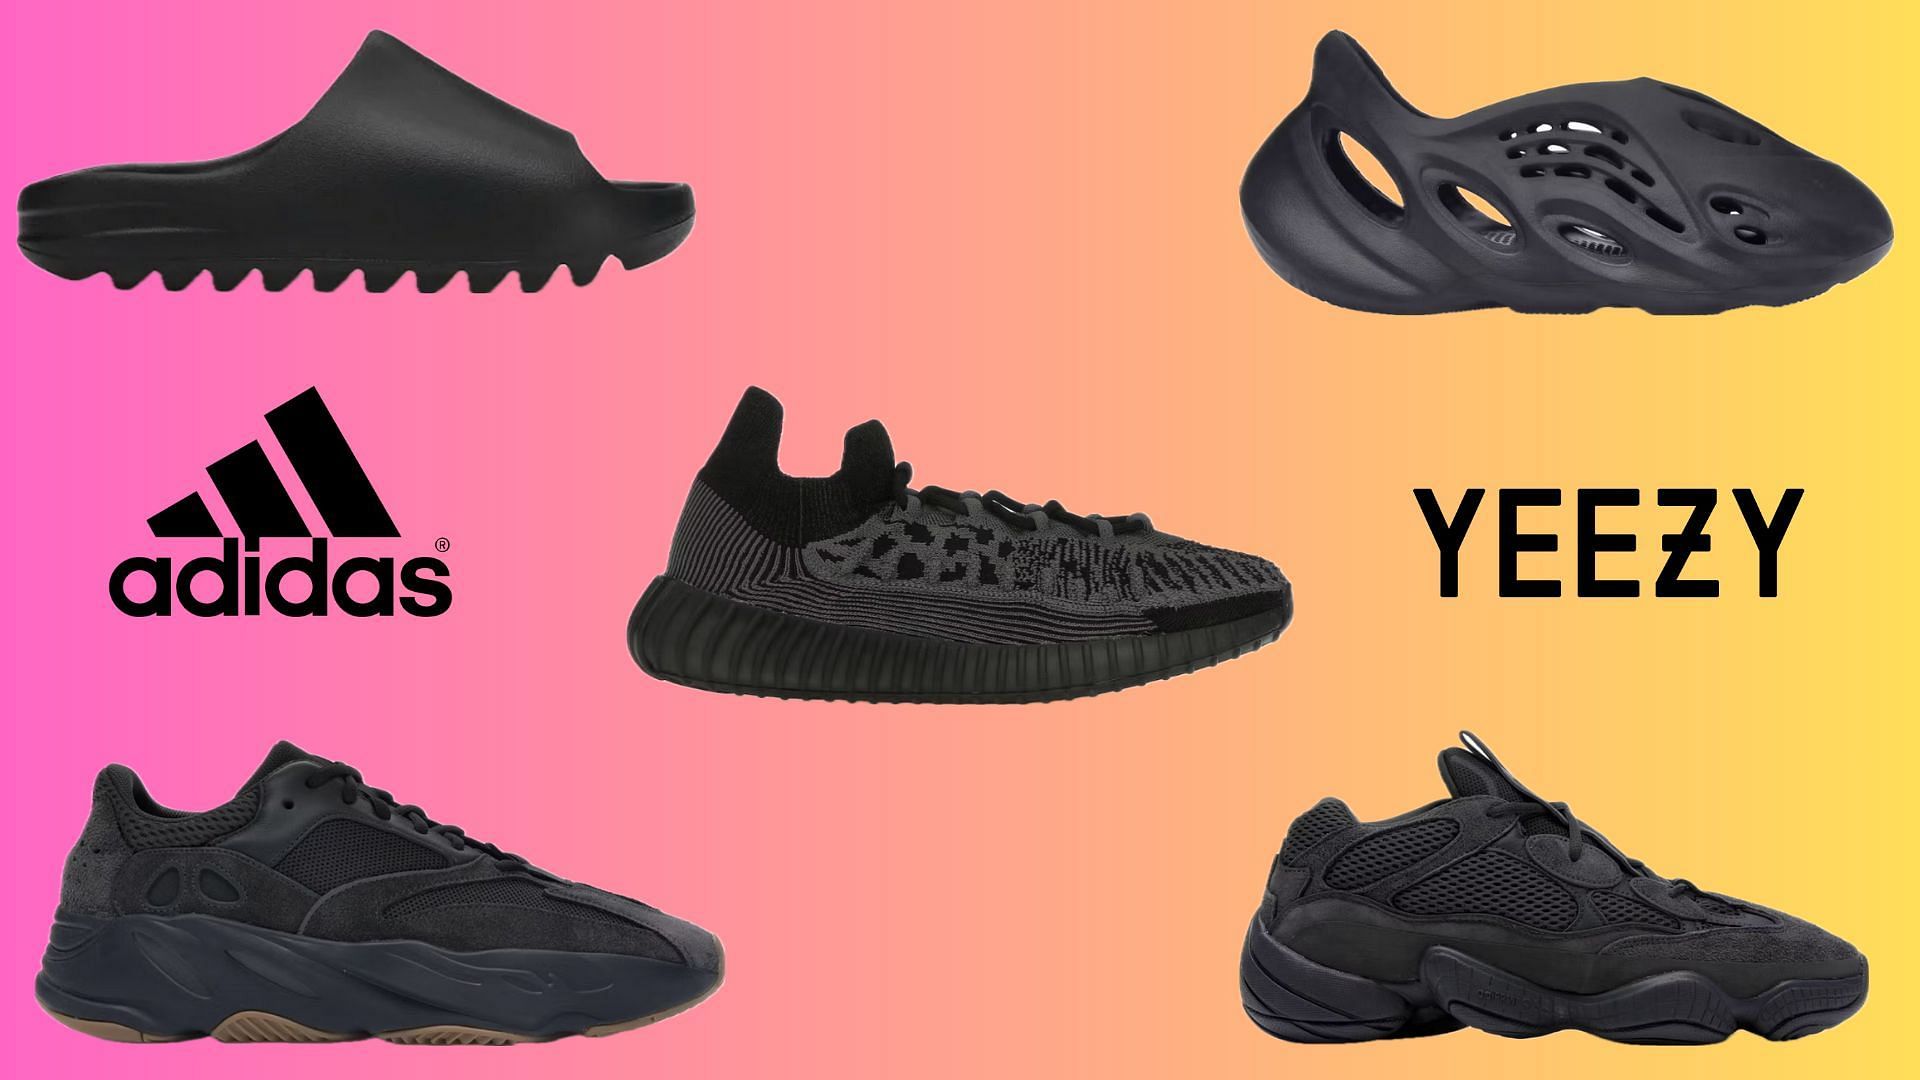 Best black Adidas Yeezy footwear designs to get in 2023 (Image via Adidas)